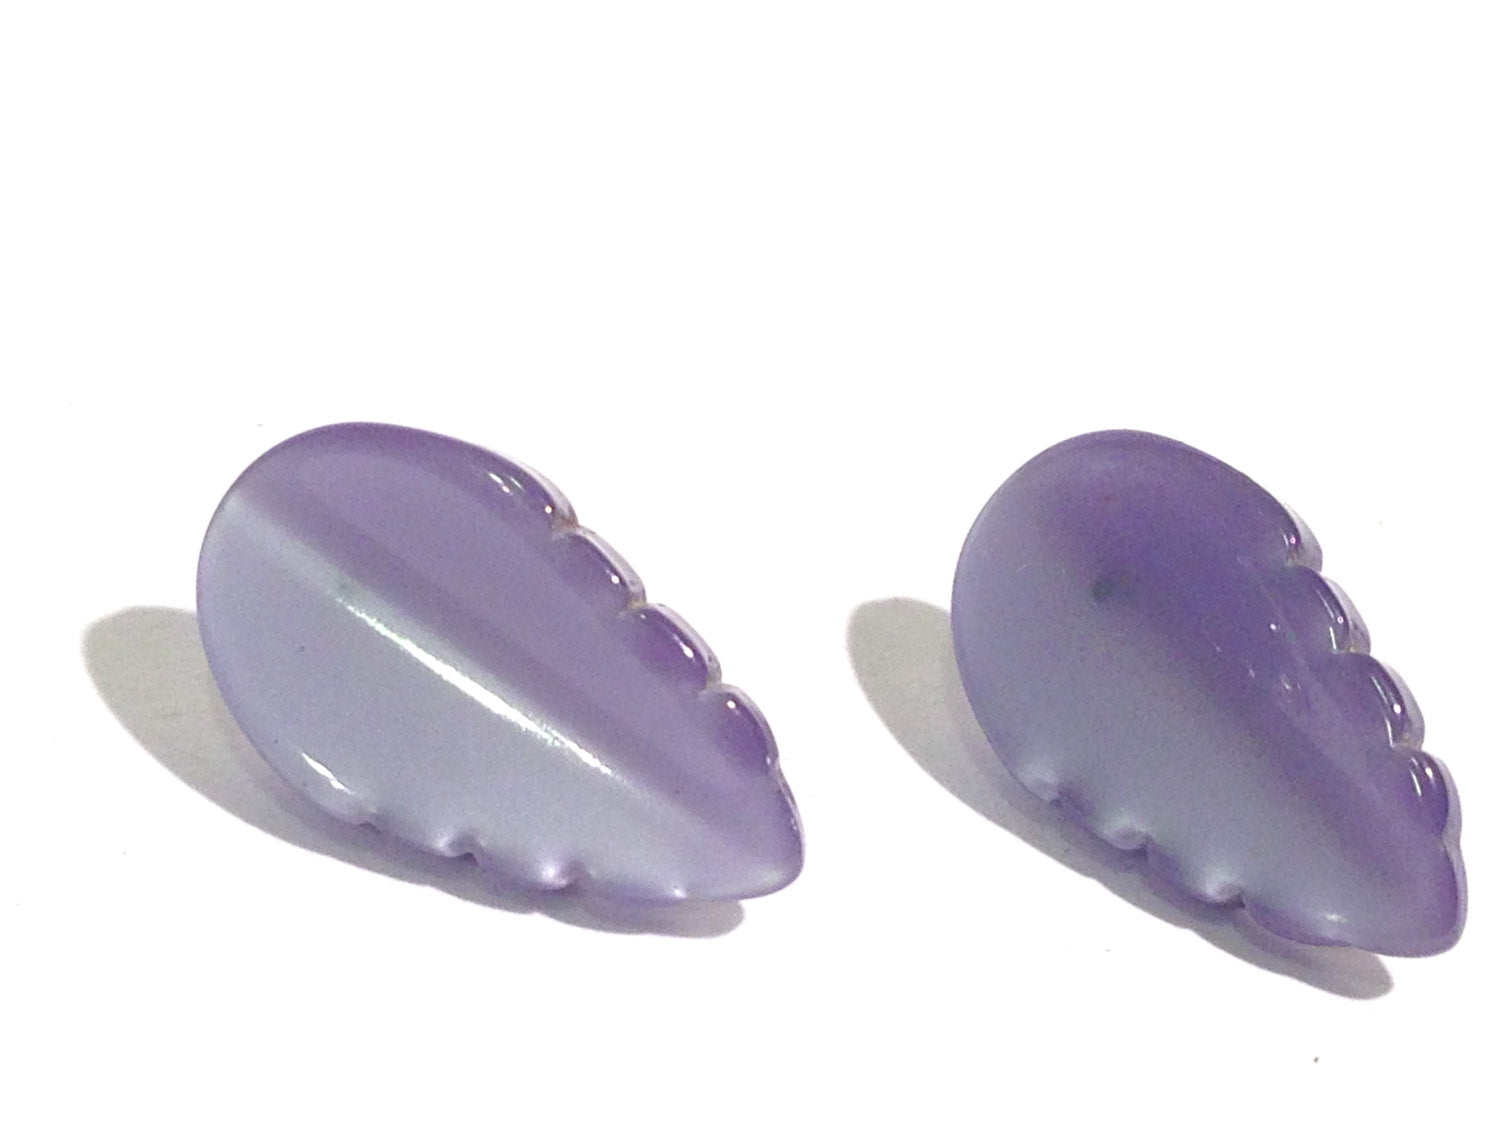 lavender leaf earrings